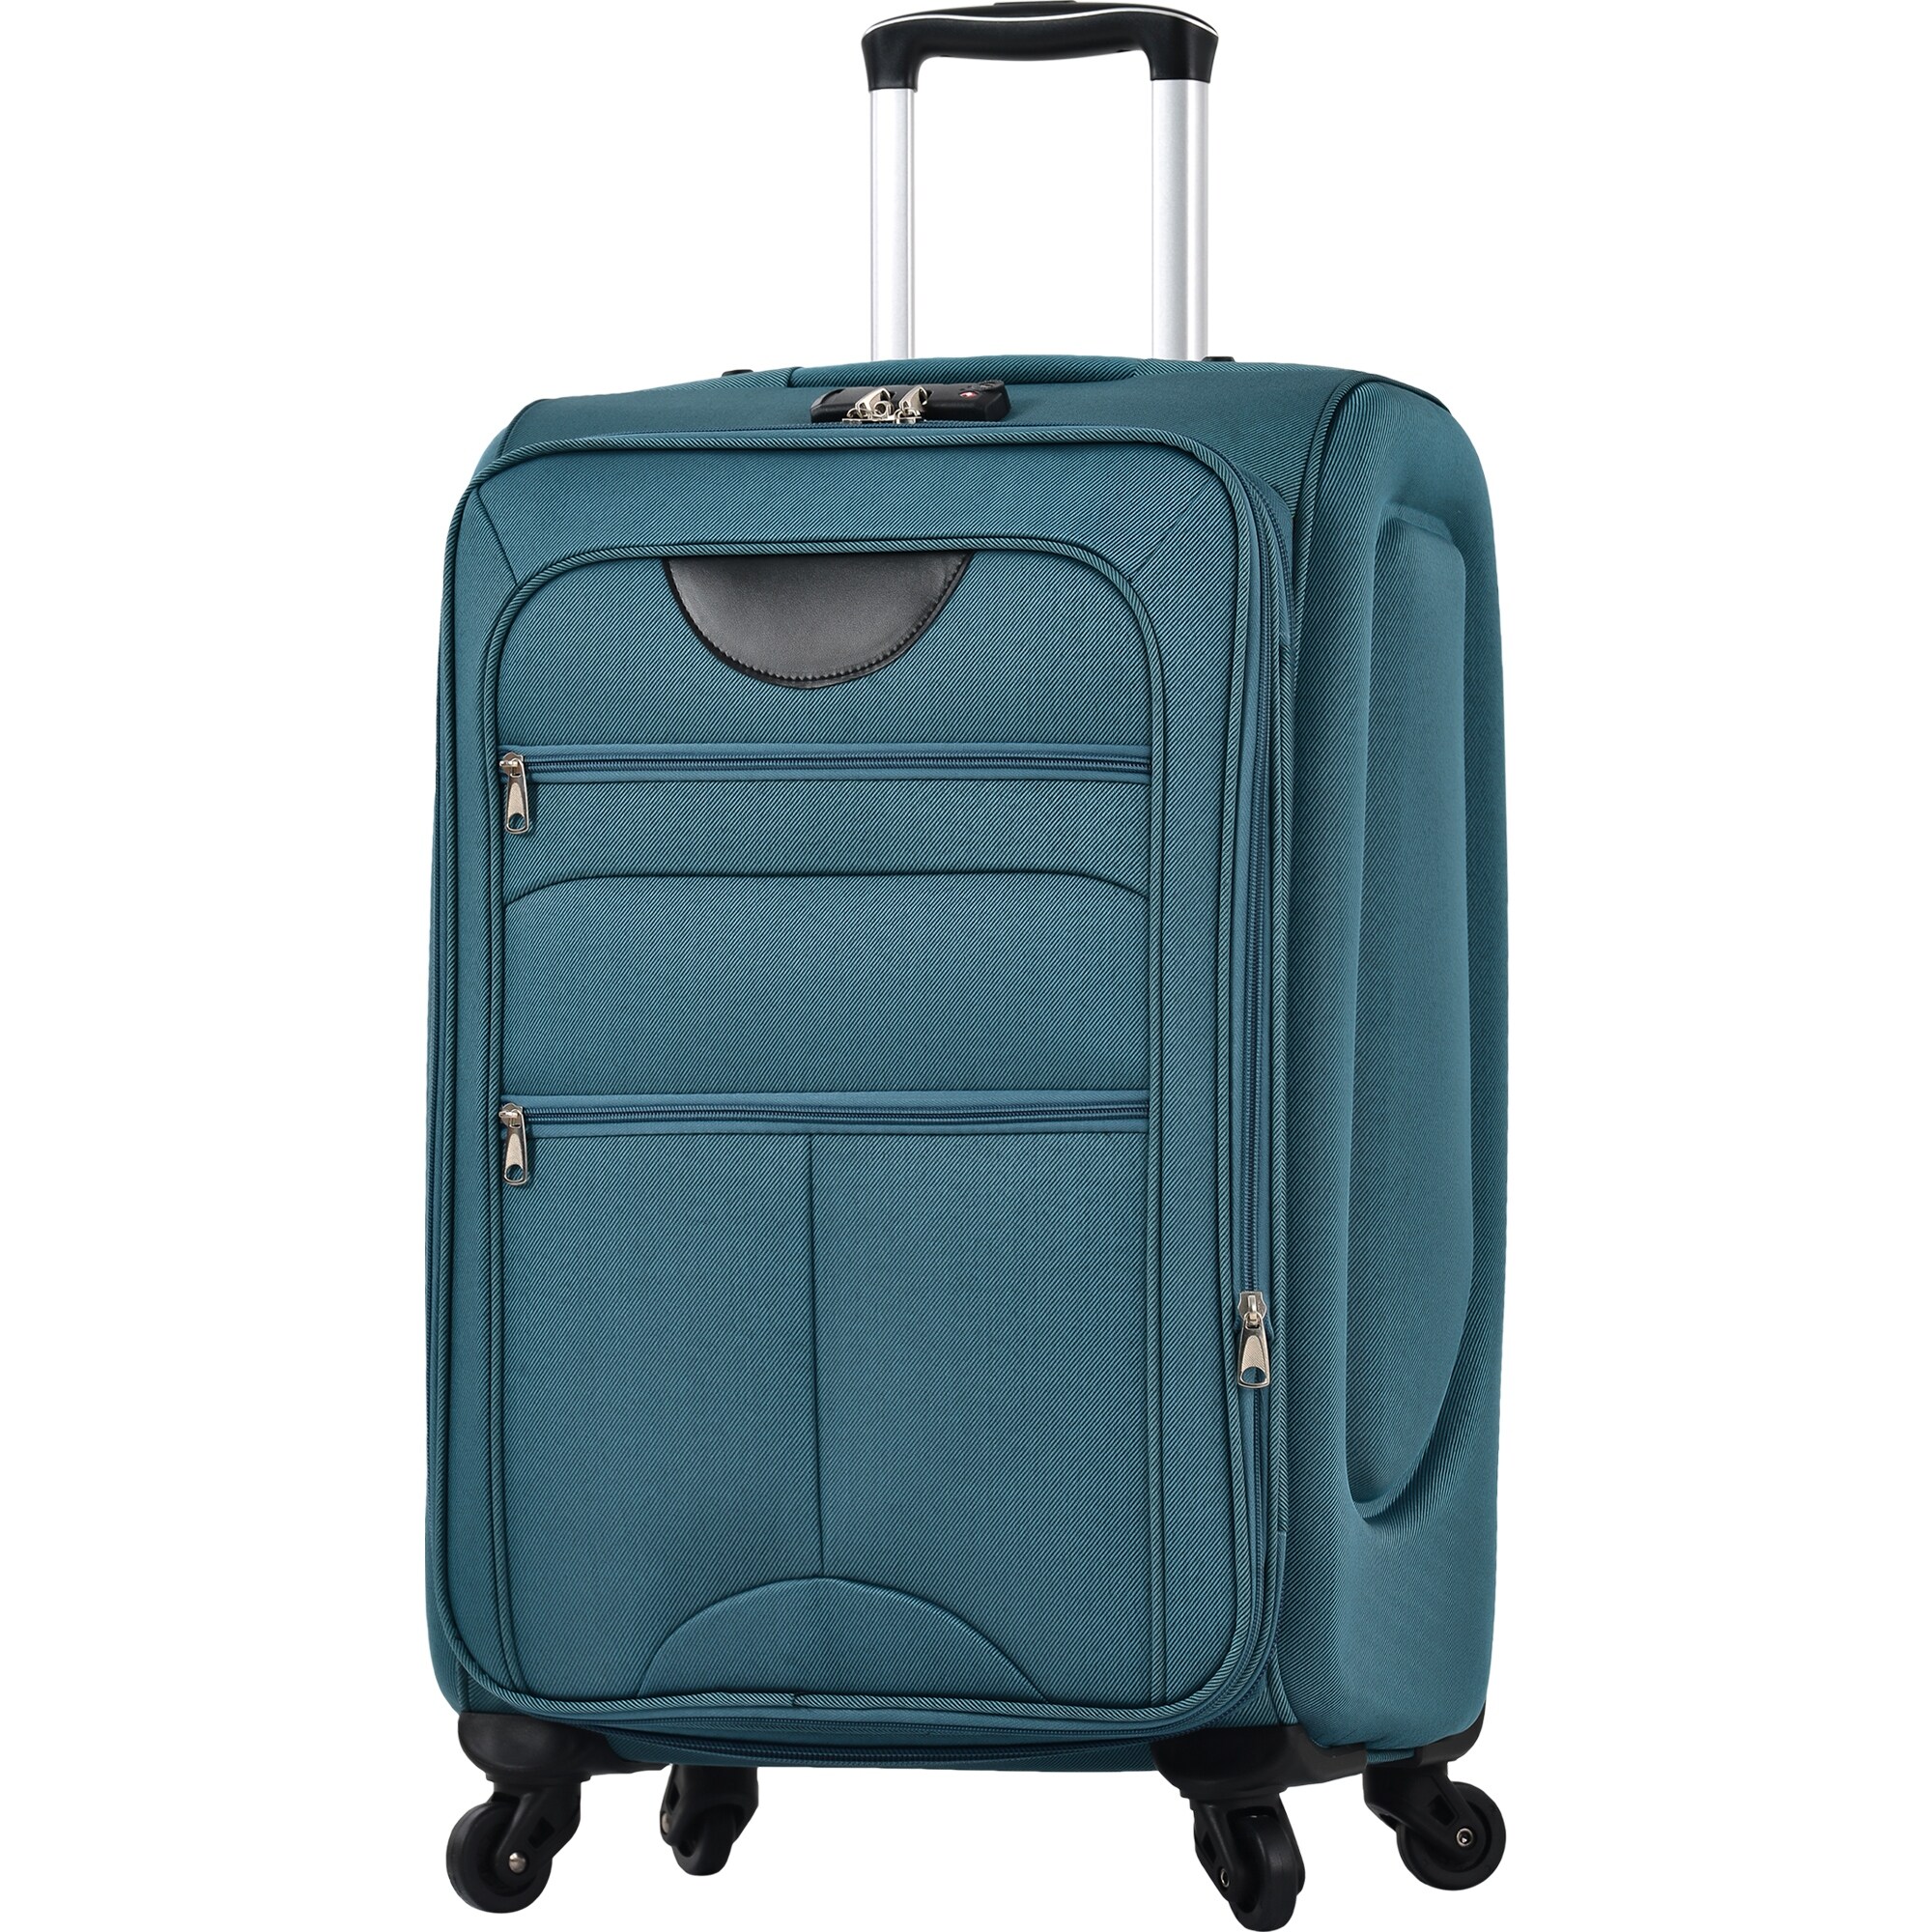 HomGarden 3PCS (22/26/30 inch) Travel Luggage Set Expandable Hardside  Suitcase Spinner Wheels Black